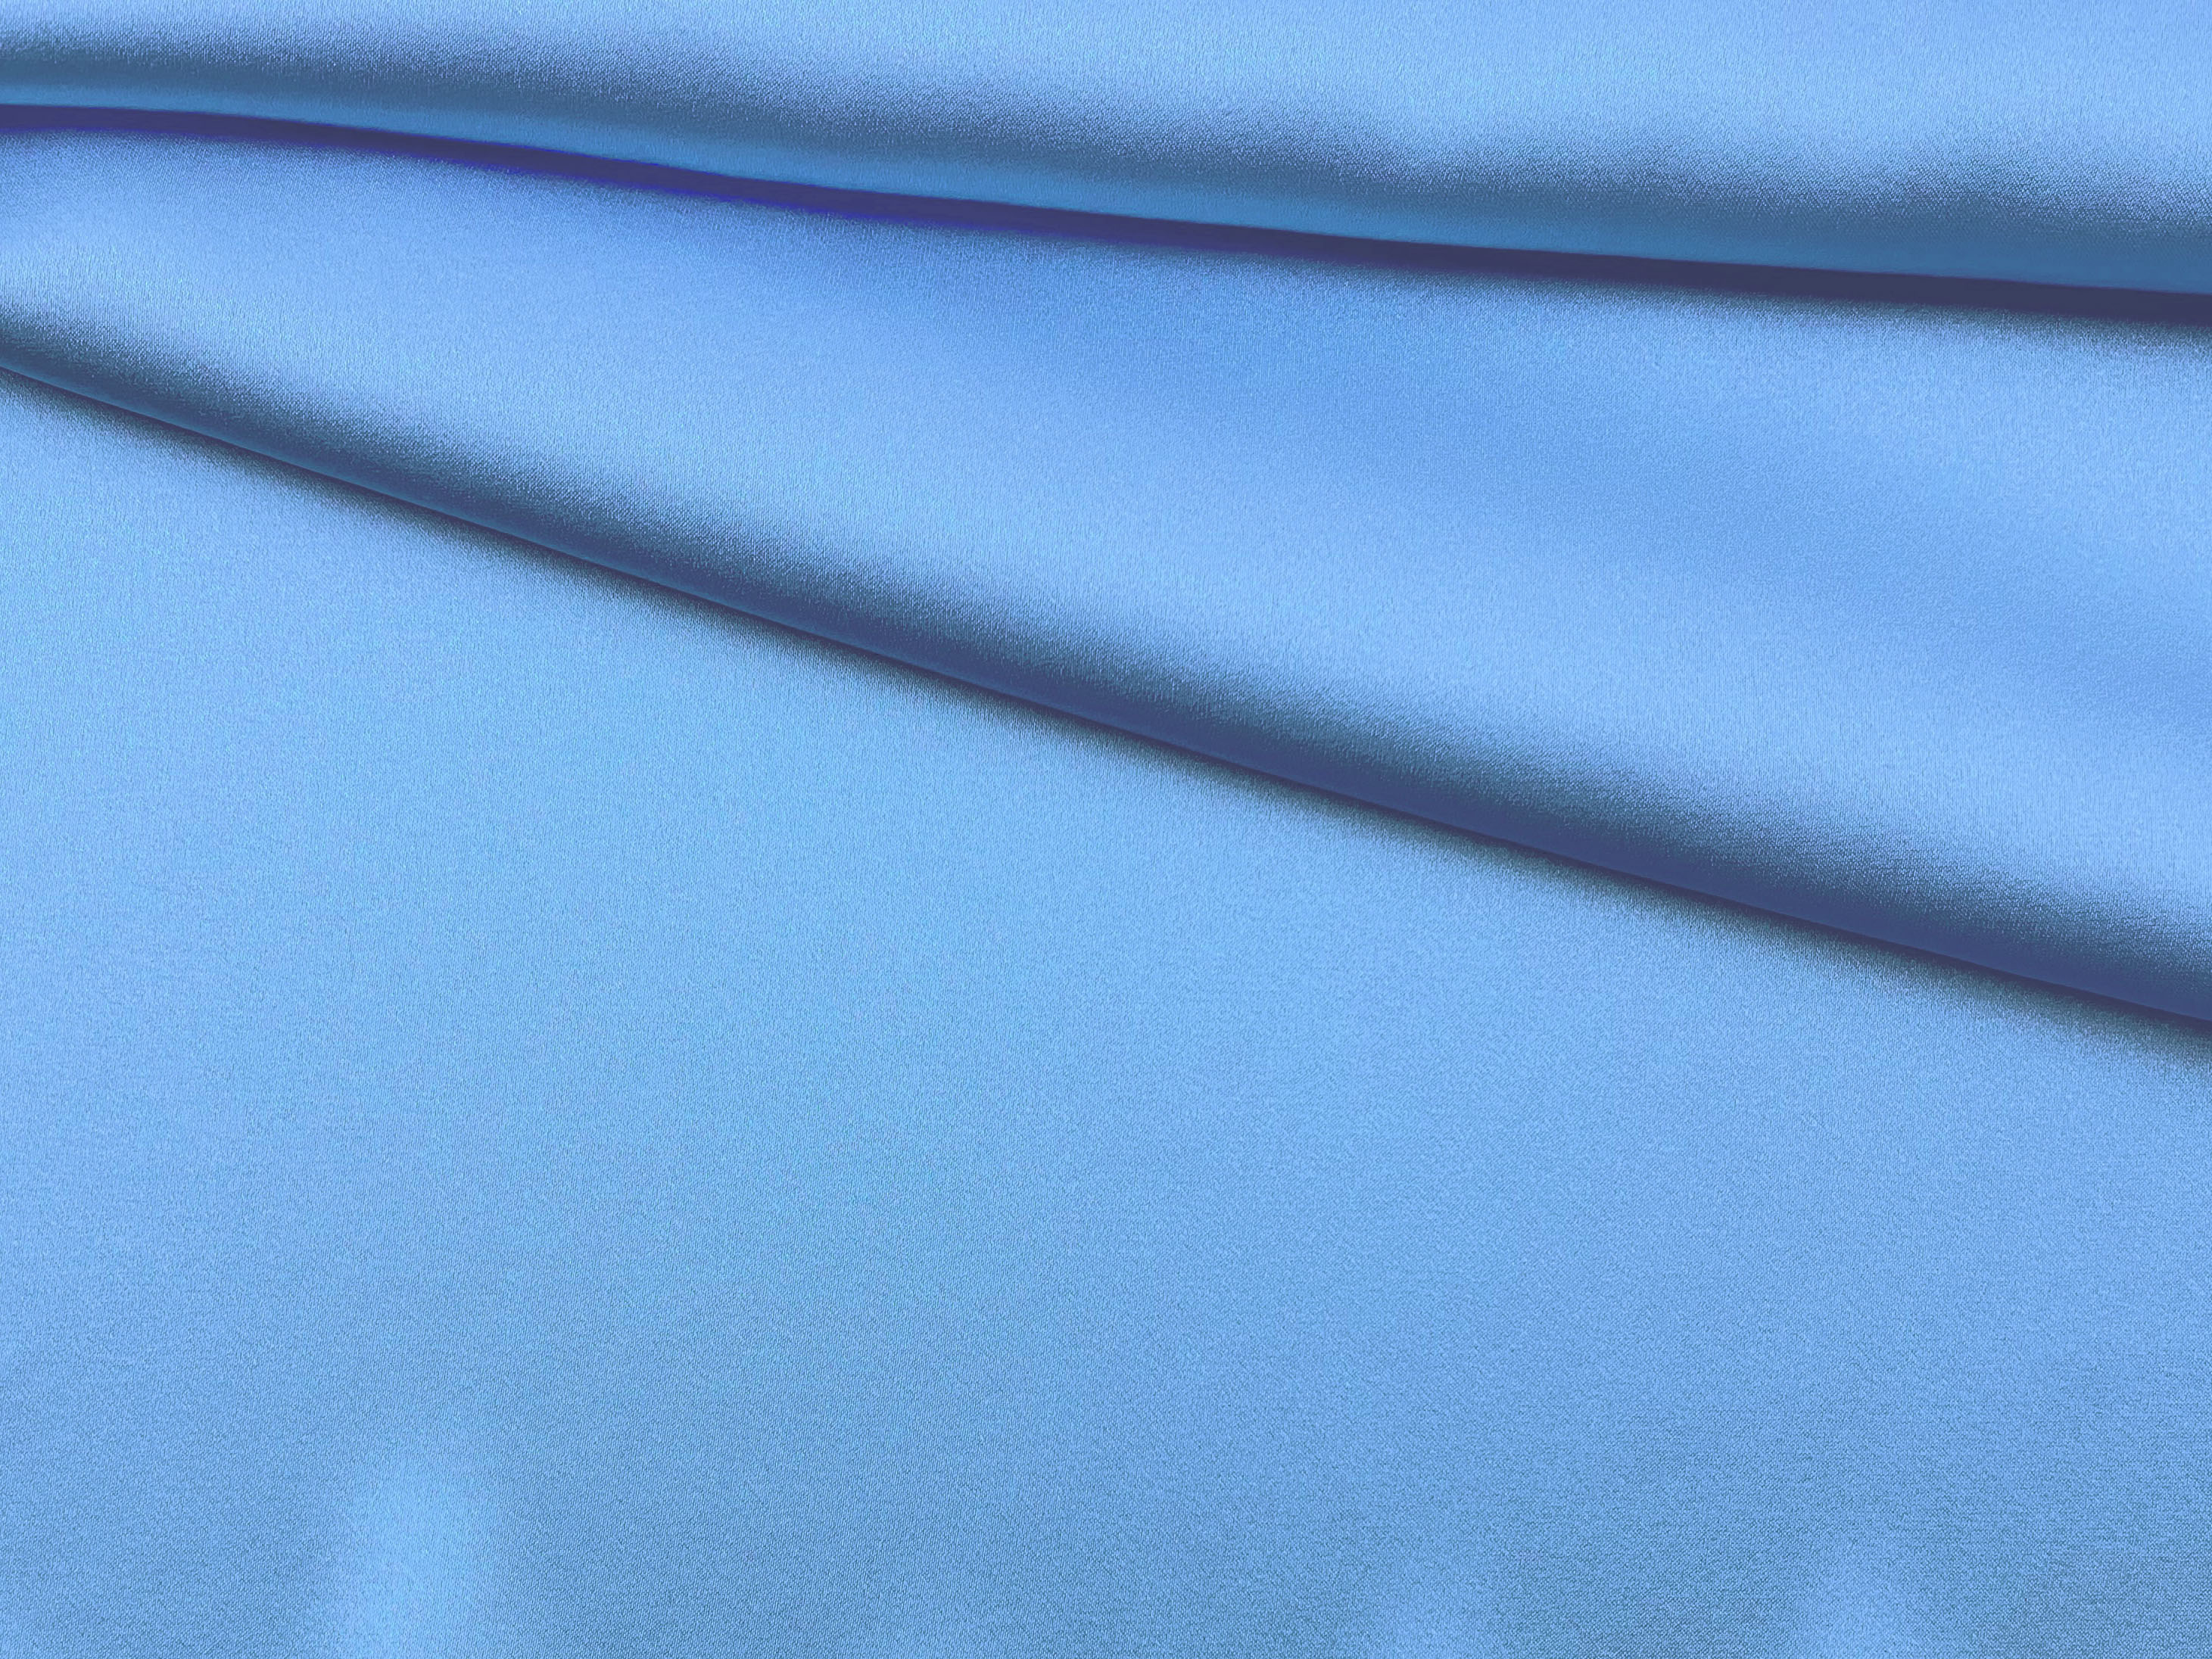 Ткань  Атласный Шелк с эластаном  голубой светлый Италия  46332 1